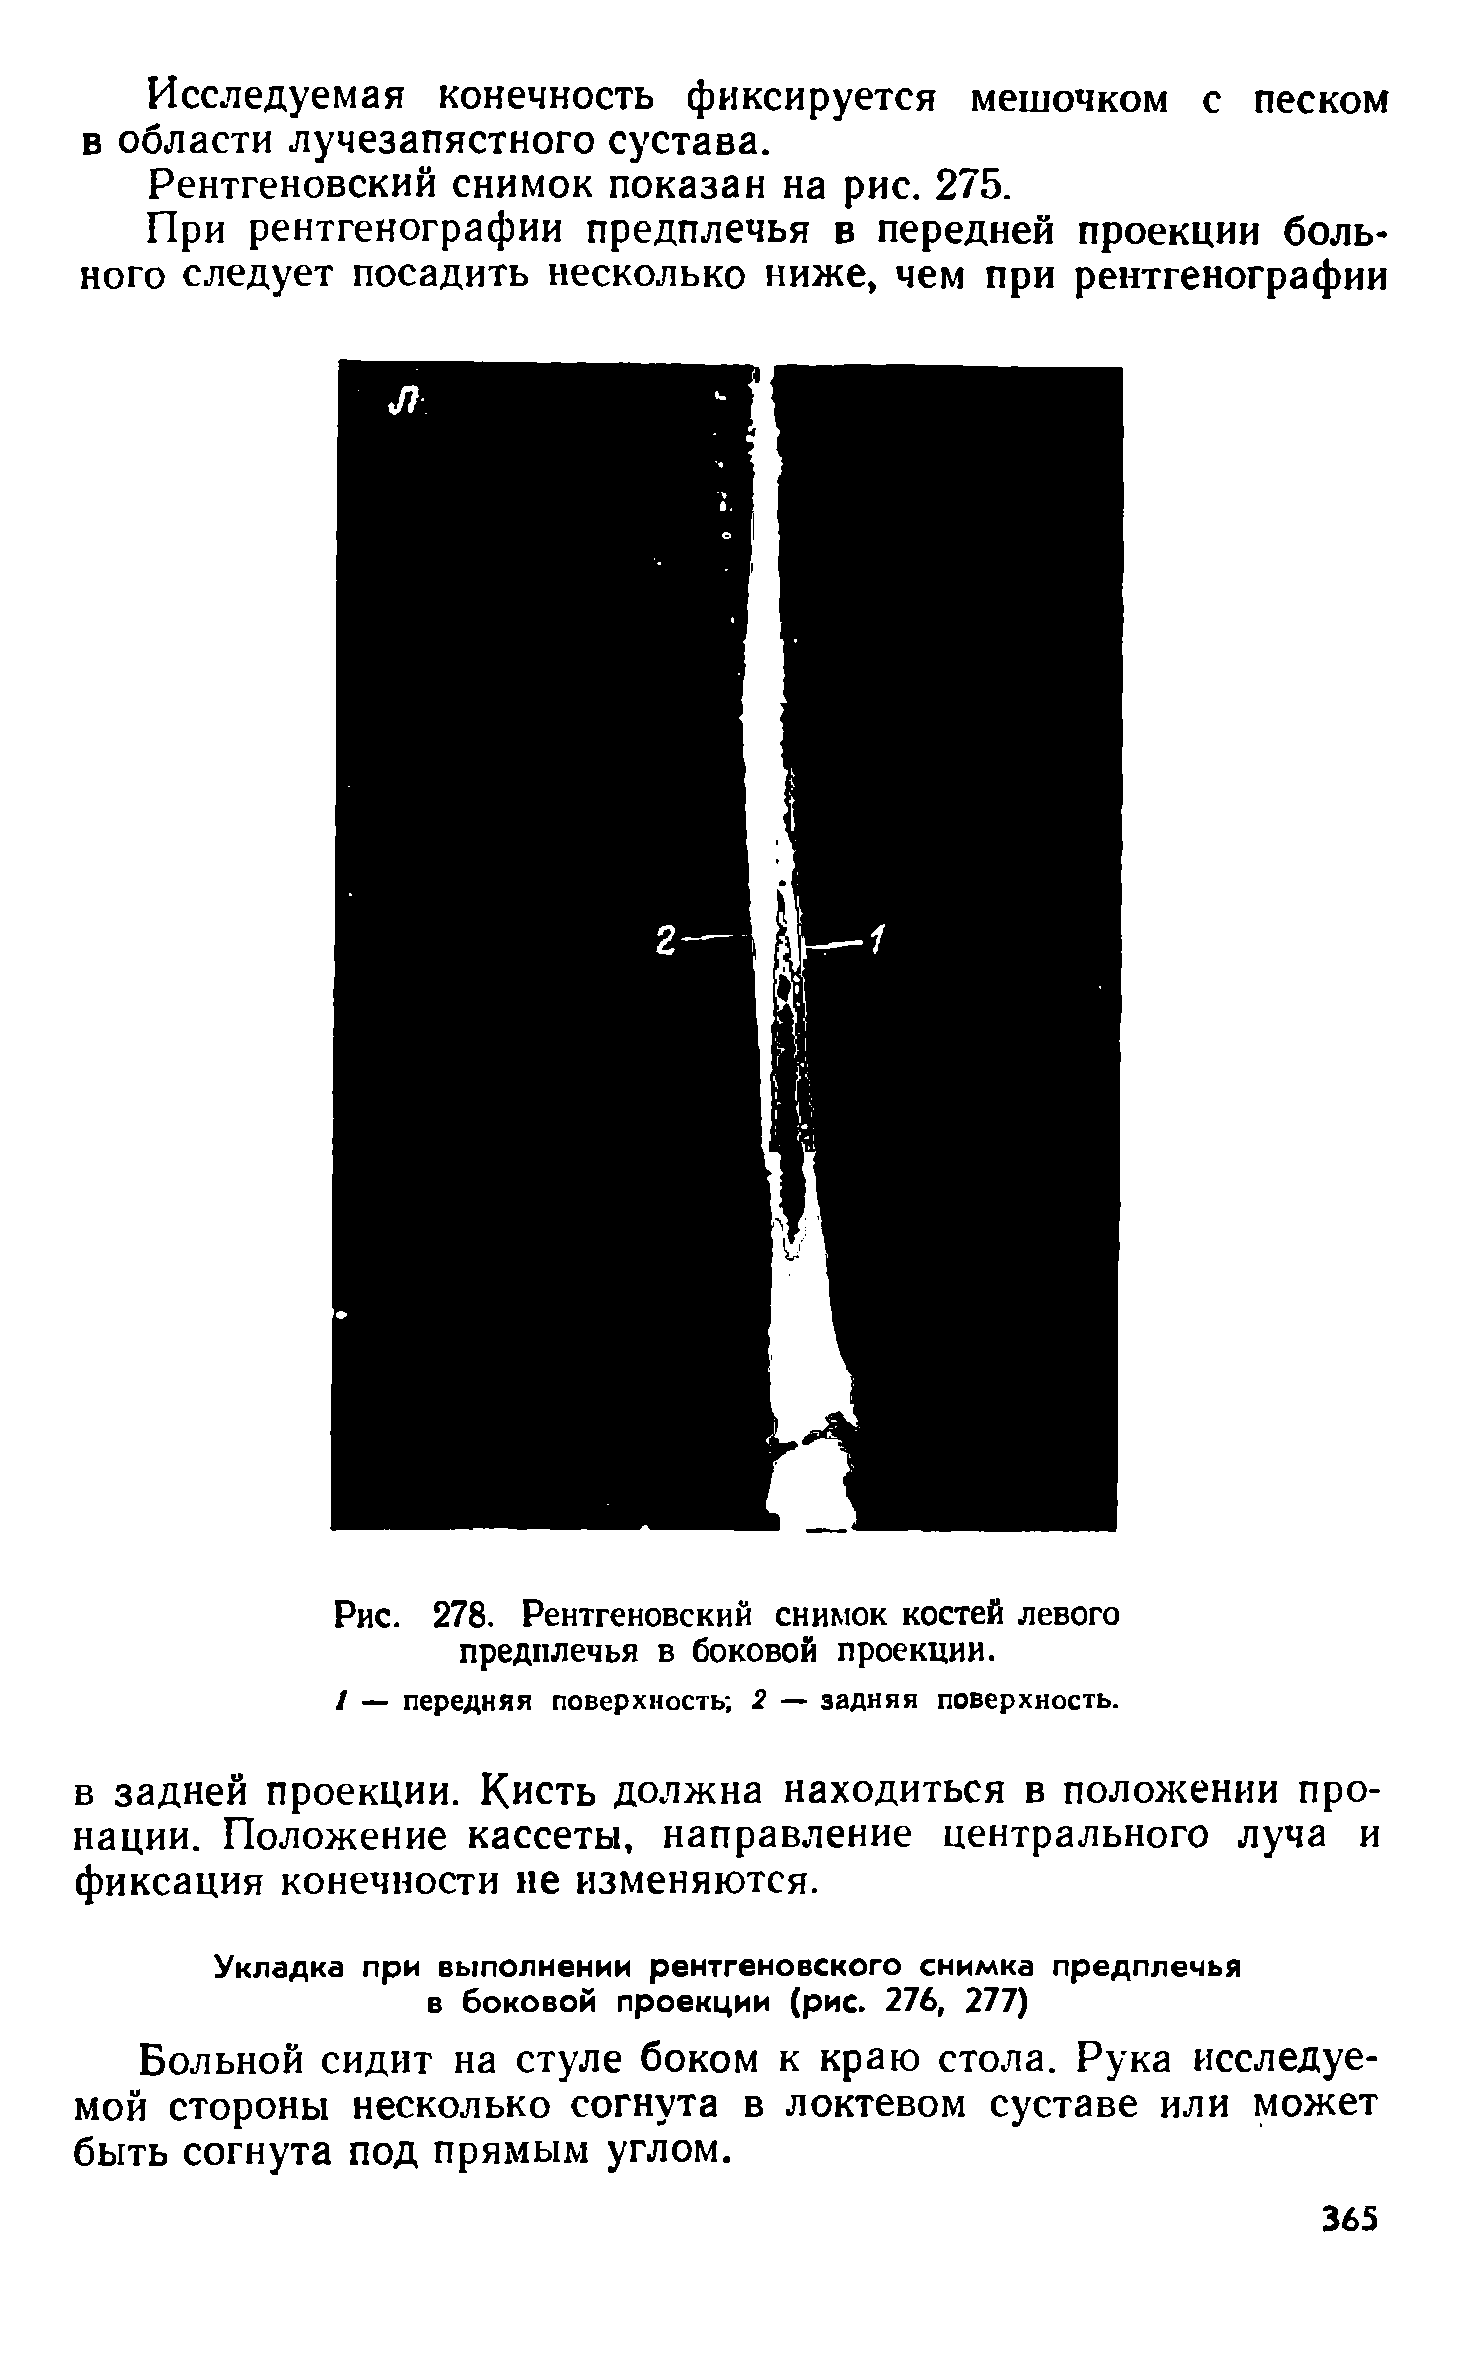 Рис. 278. Рентгеновский снимок костей левого предплечья в боковой проекции.